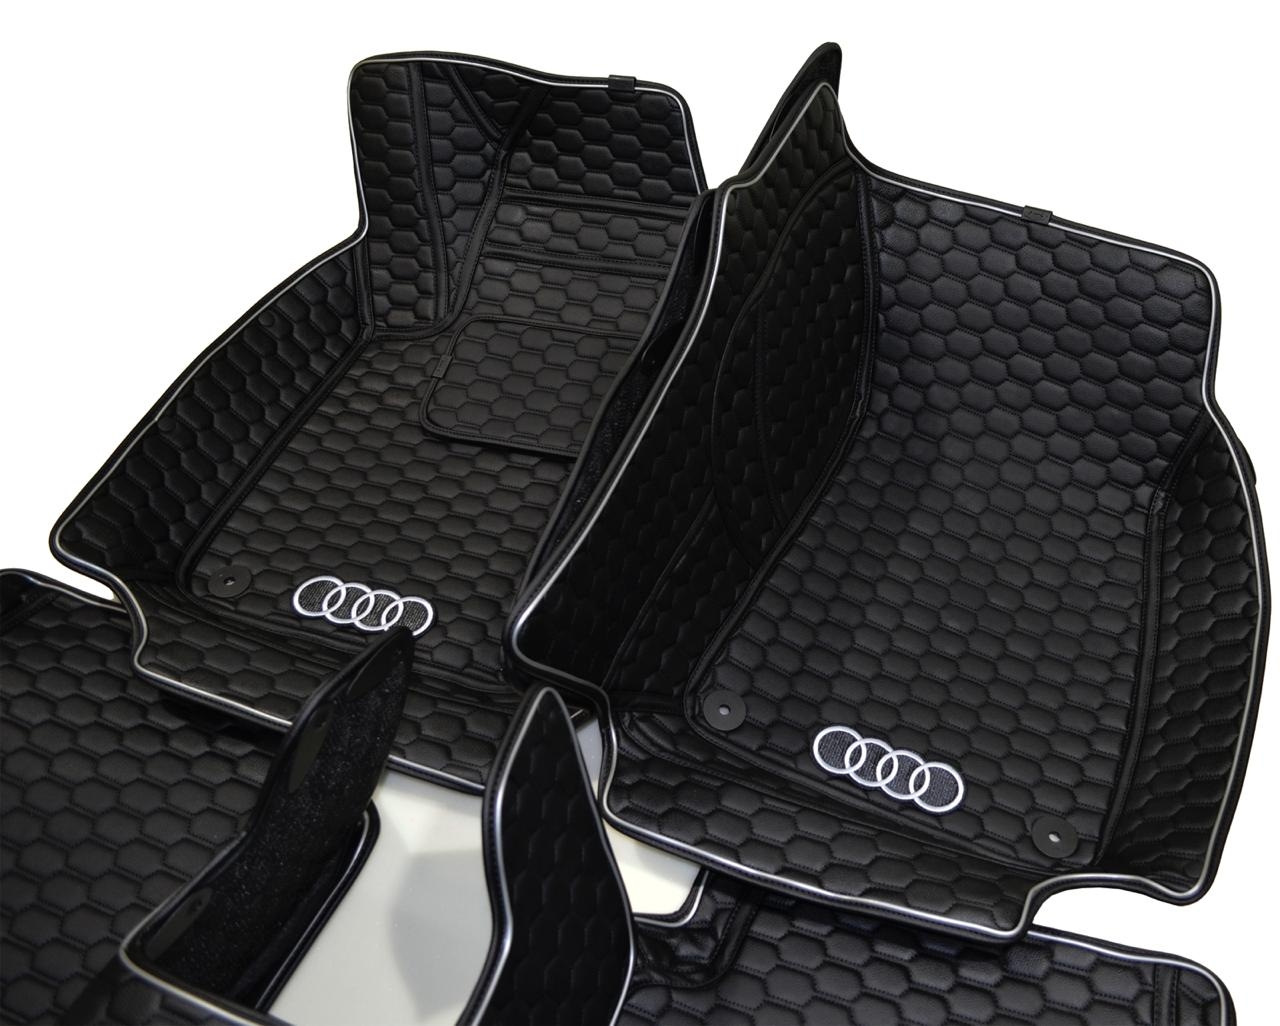 Коврики купить владивосток. 5d коврики Audi a6 c7. 5d коврики Audi q7. 3d коврики кожаные Audi q5. Коврики Ауди а6 экокожа.